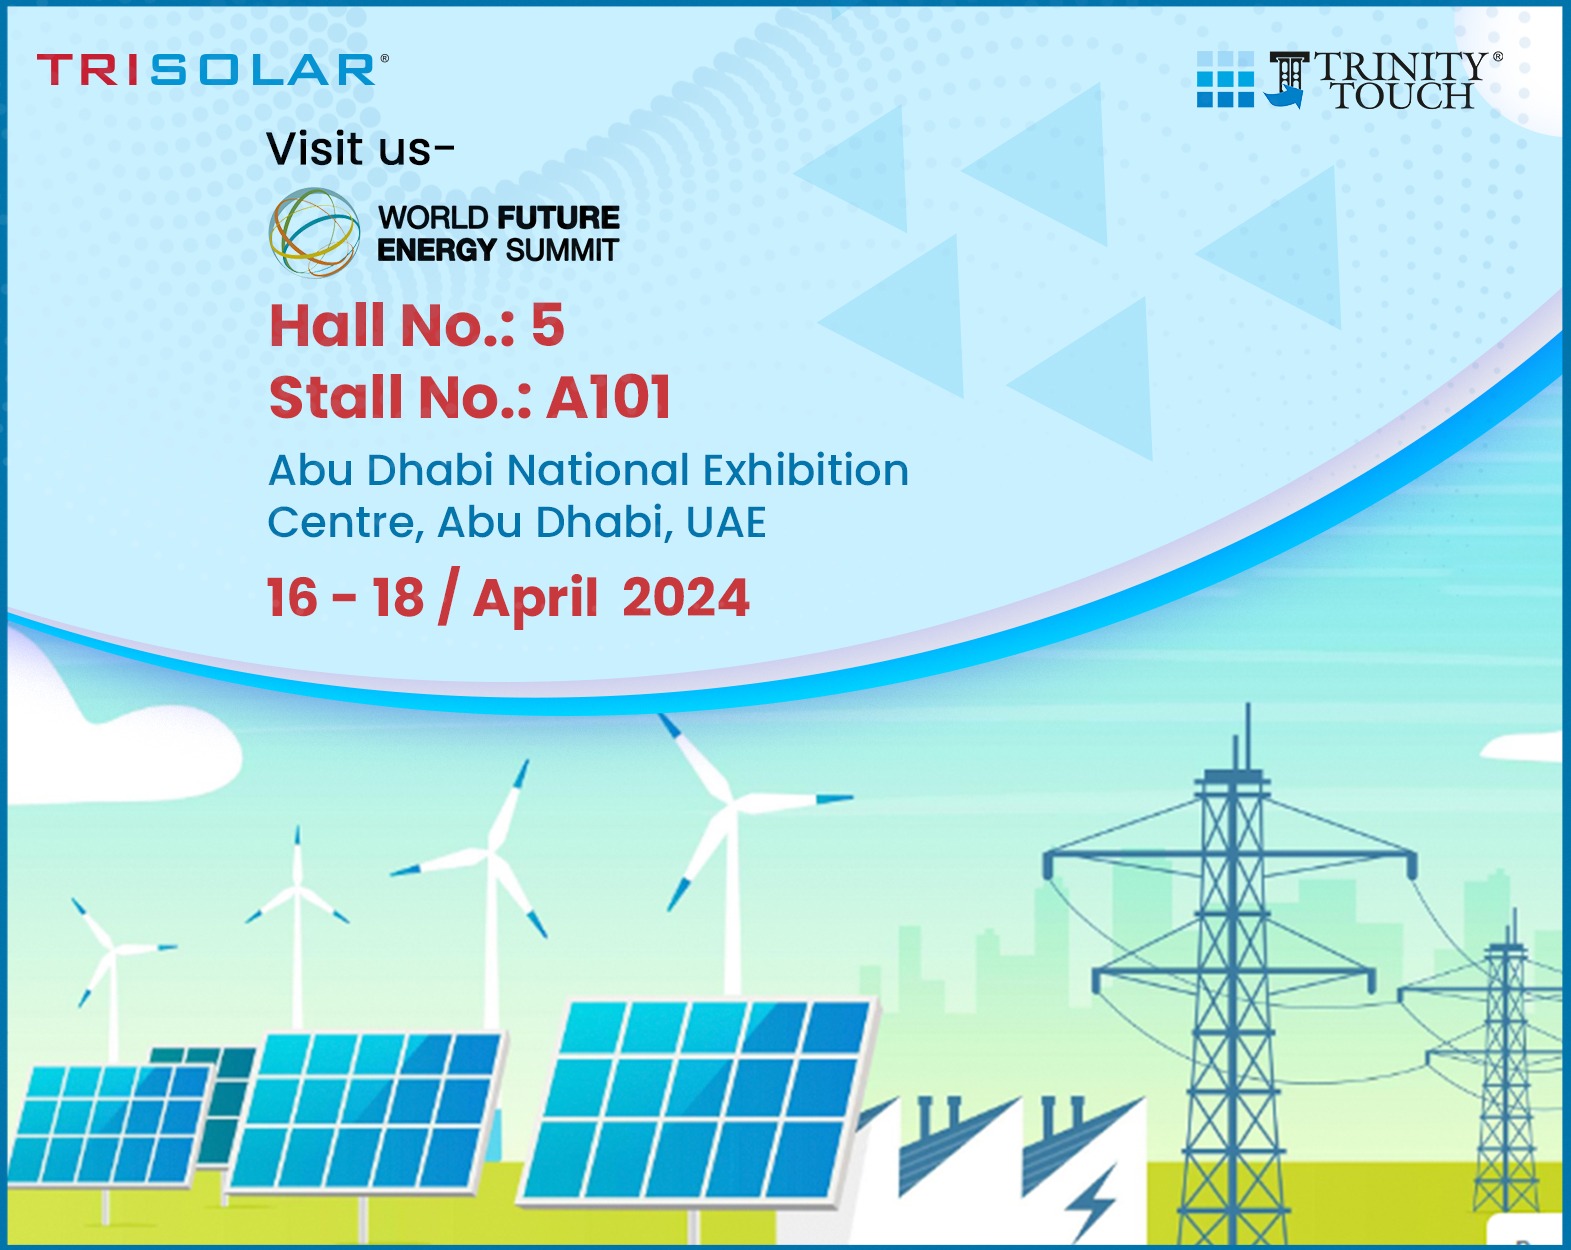 World-Future-Energy-Summit-Abu-Dhabi-National-Exhibition-Centre-Abu-Dhabi-UAE